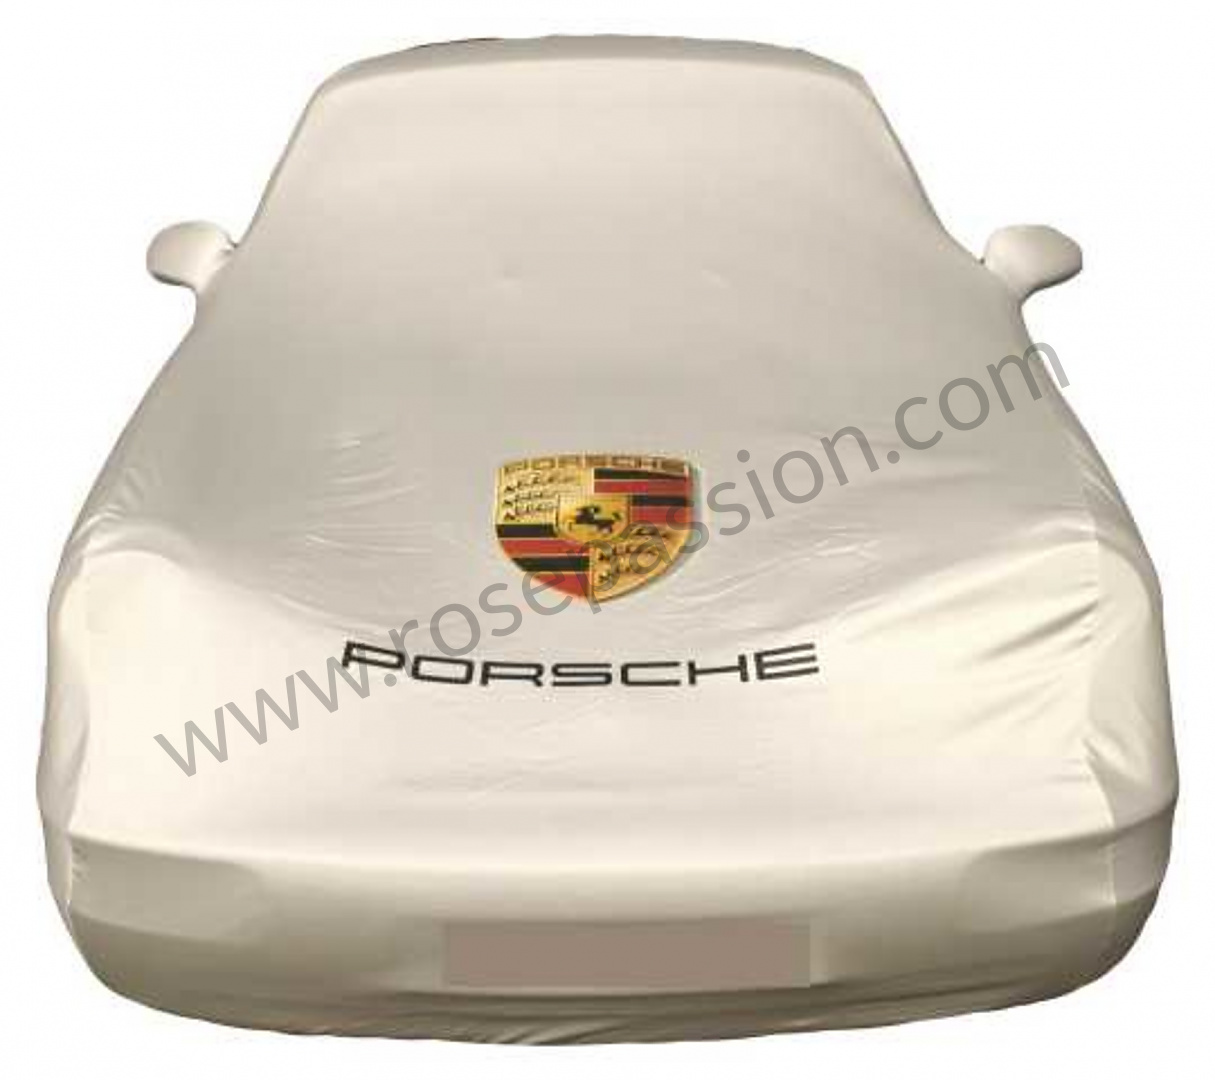 Housse protection voiture sur-mesure Porsche Boxster 981